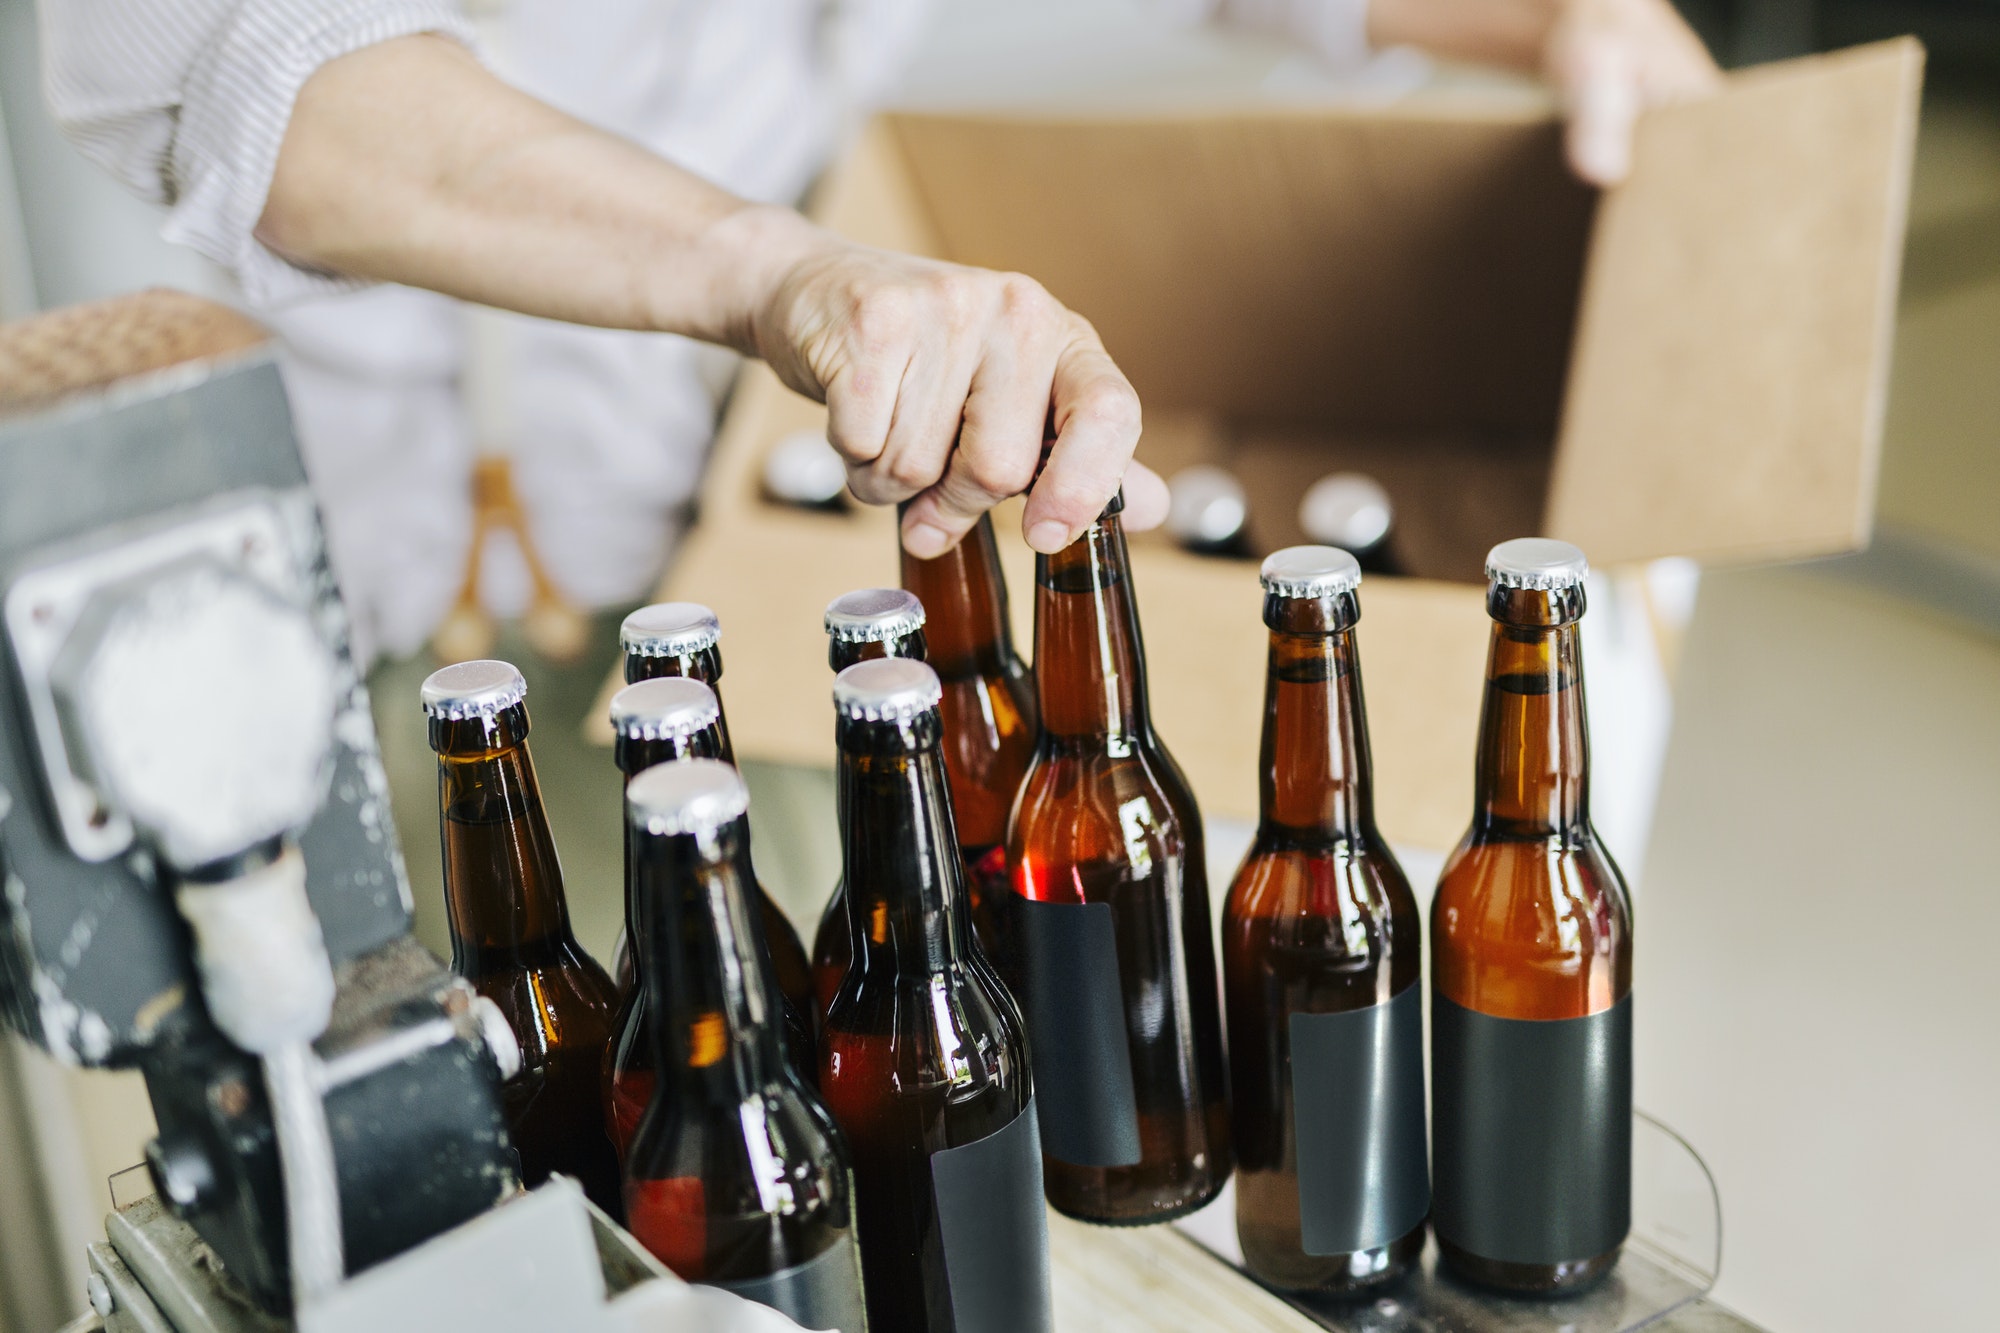 brewery-worker-preparing-beer-bottles.jpg